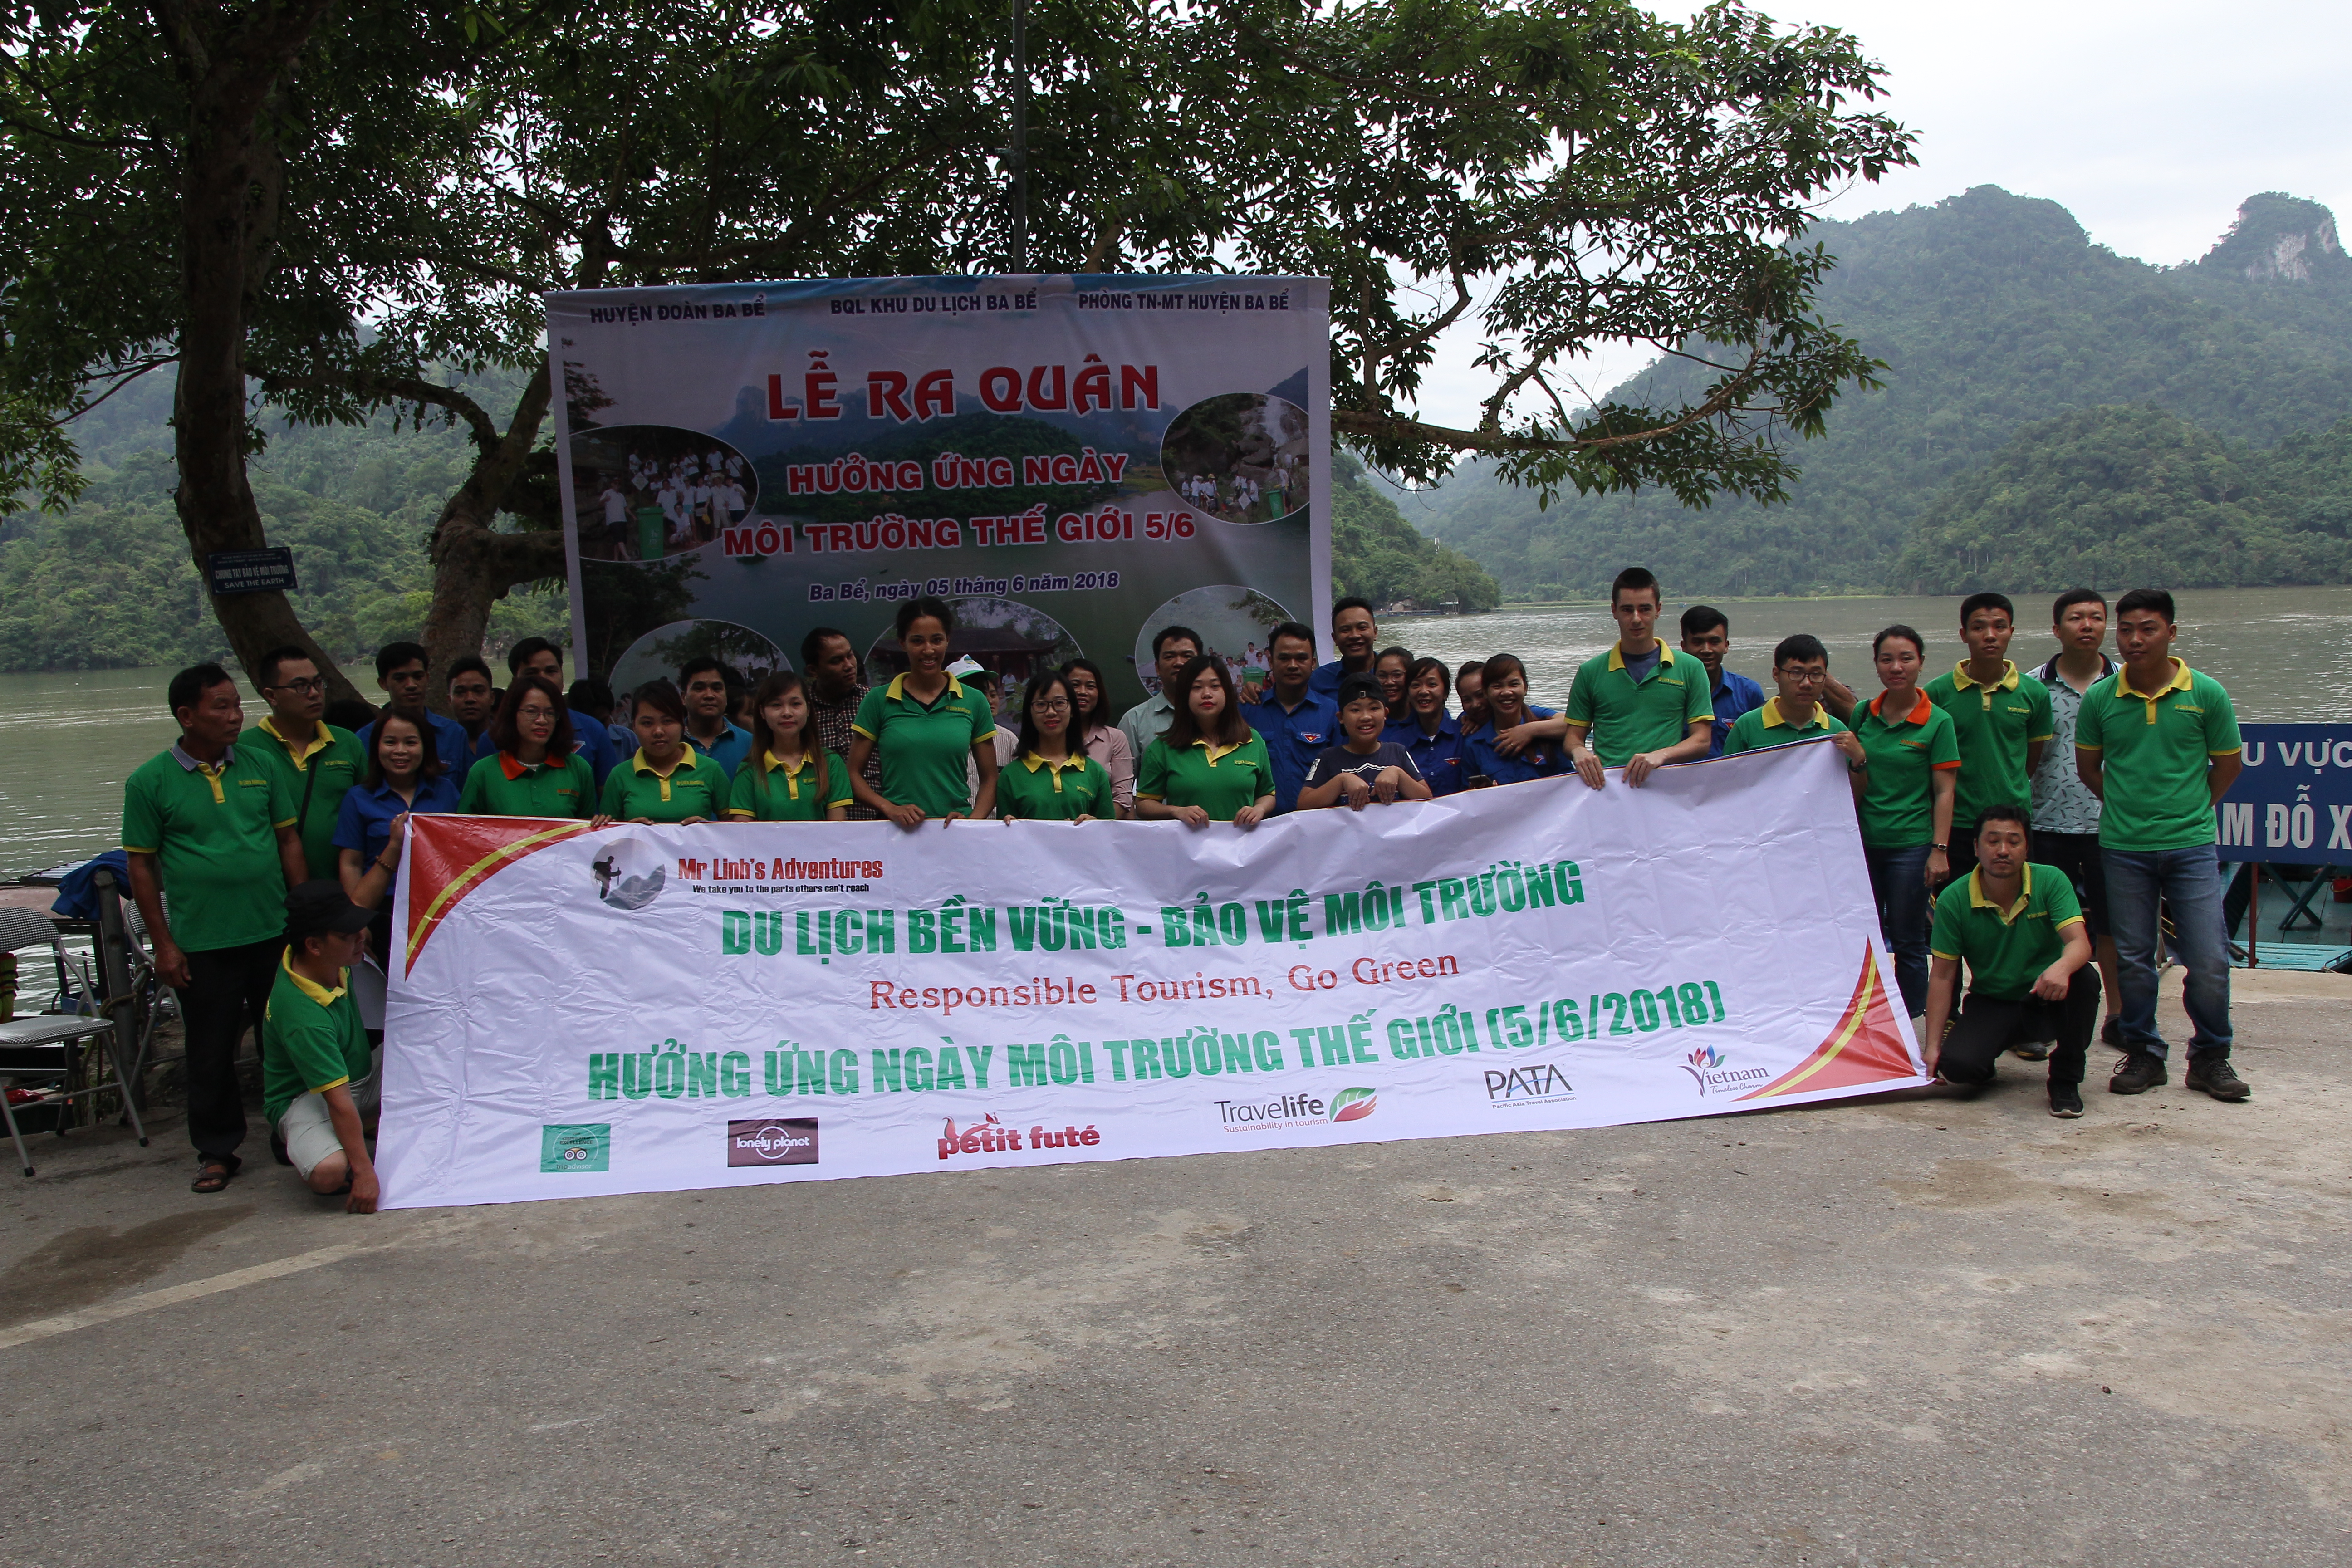 1.	Lễ ra quân vệ sinh môi trường hồ Ba Bể nhận được sự quan tâm tham gia của chính quyền địa phương và các đoàn viên thanh niên.